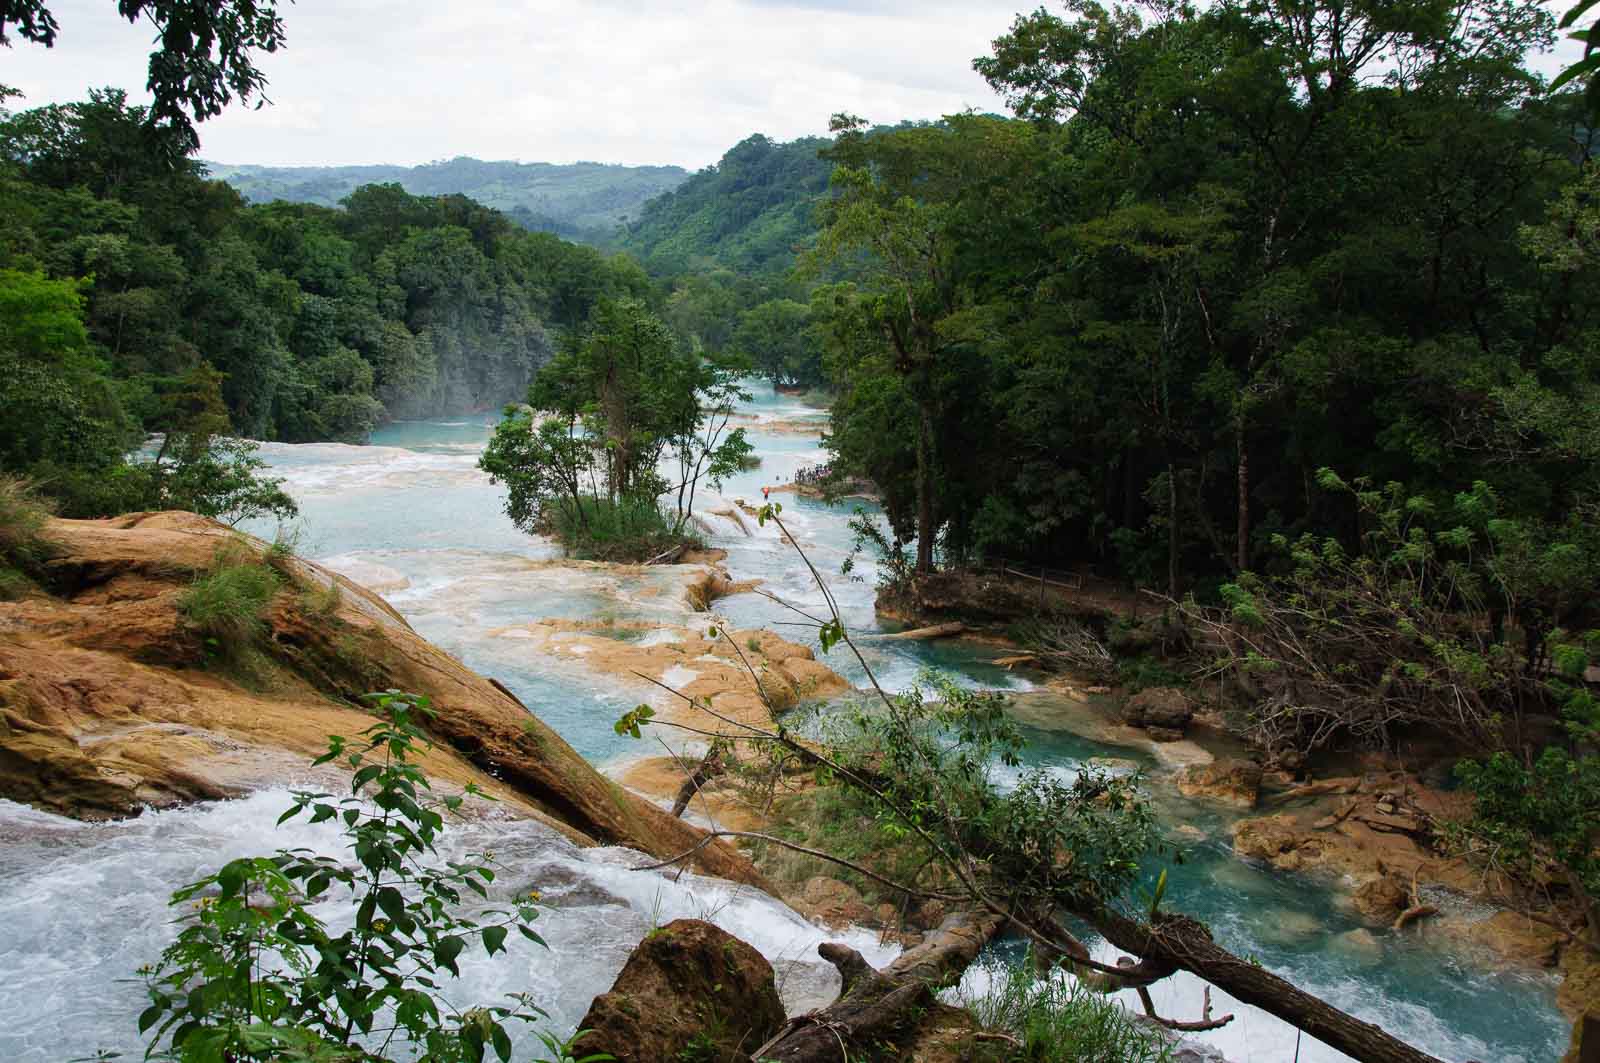 Les chutes d’Agua Azul dans les Chiapas au Mexique